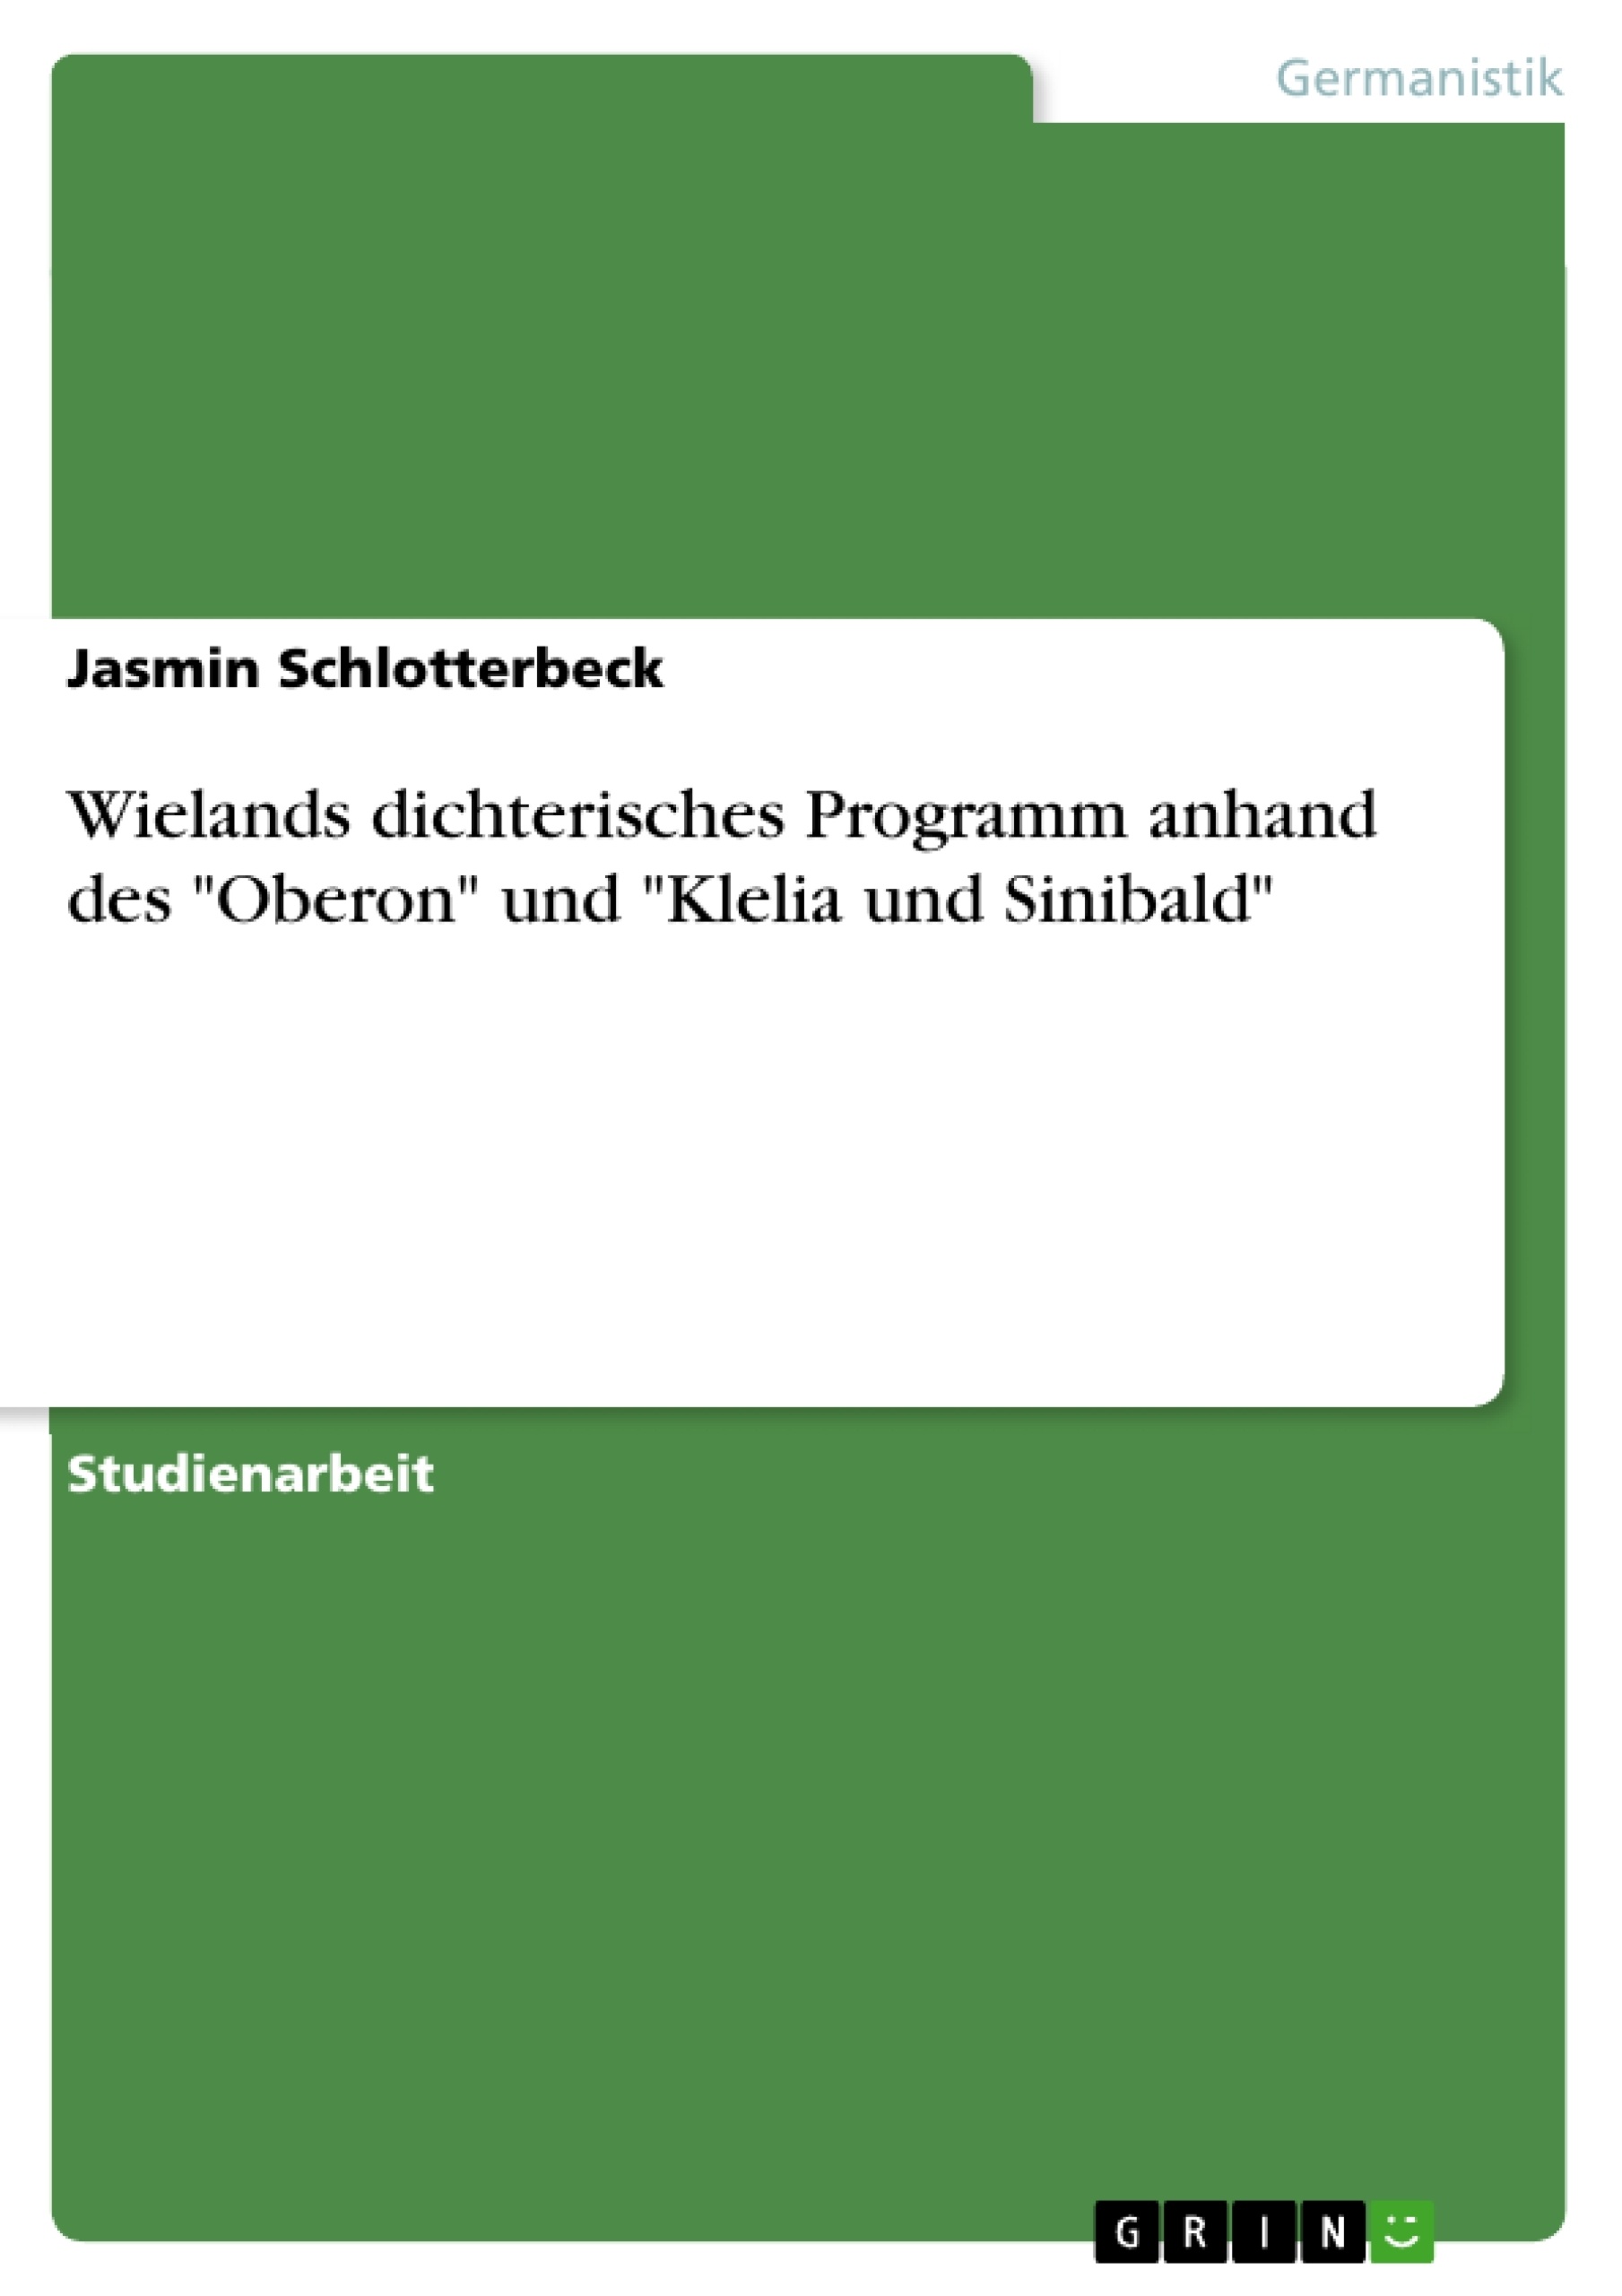 Título: Wielands dichterisches Programm anhand des "Oberon" und "Klelia und Sinibald"